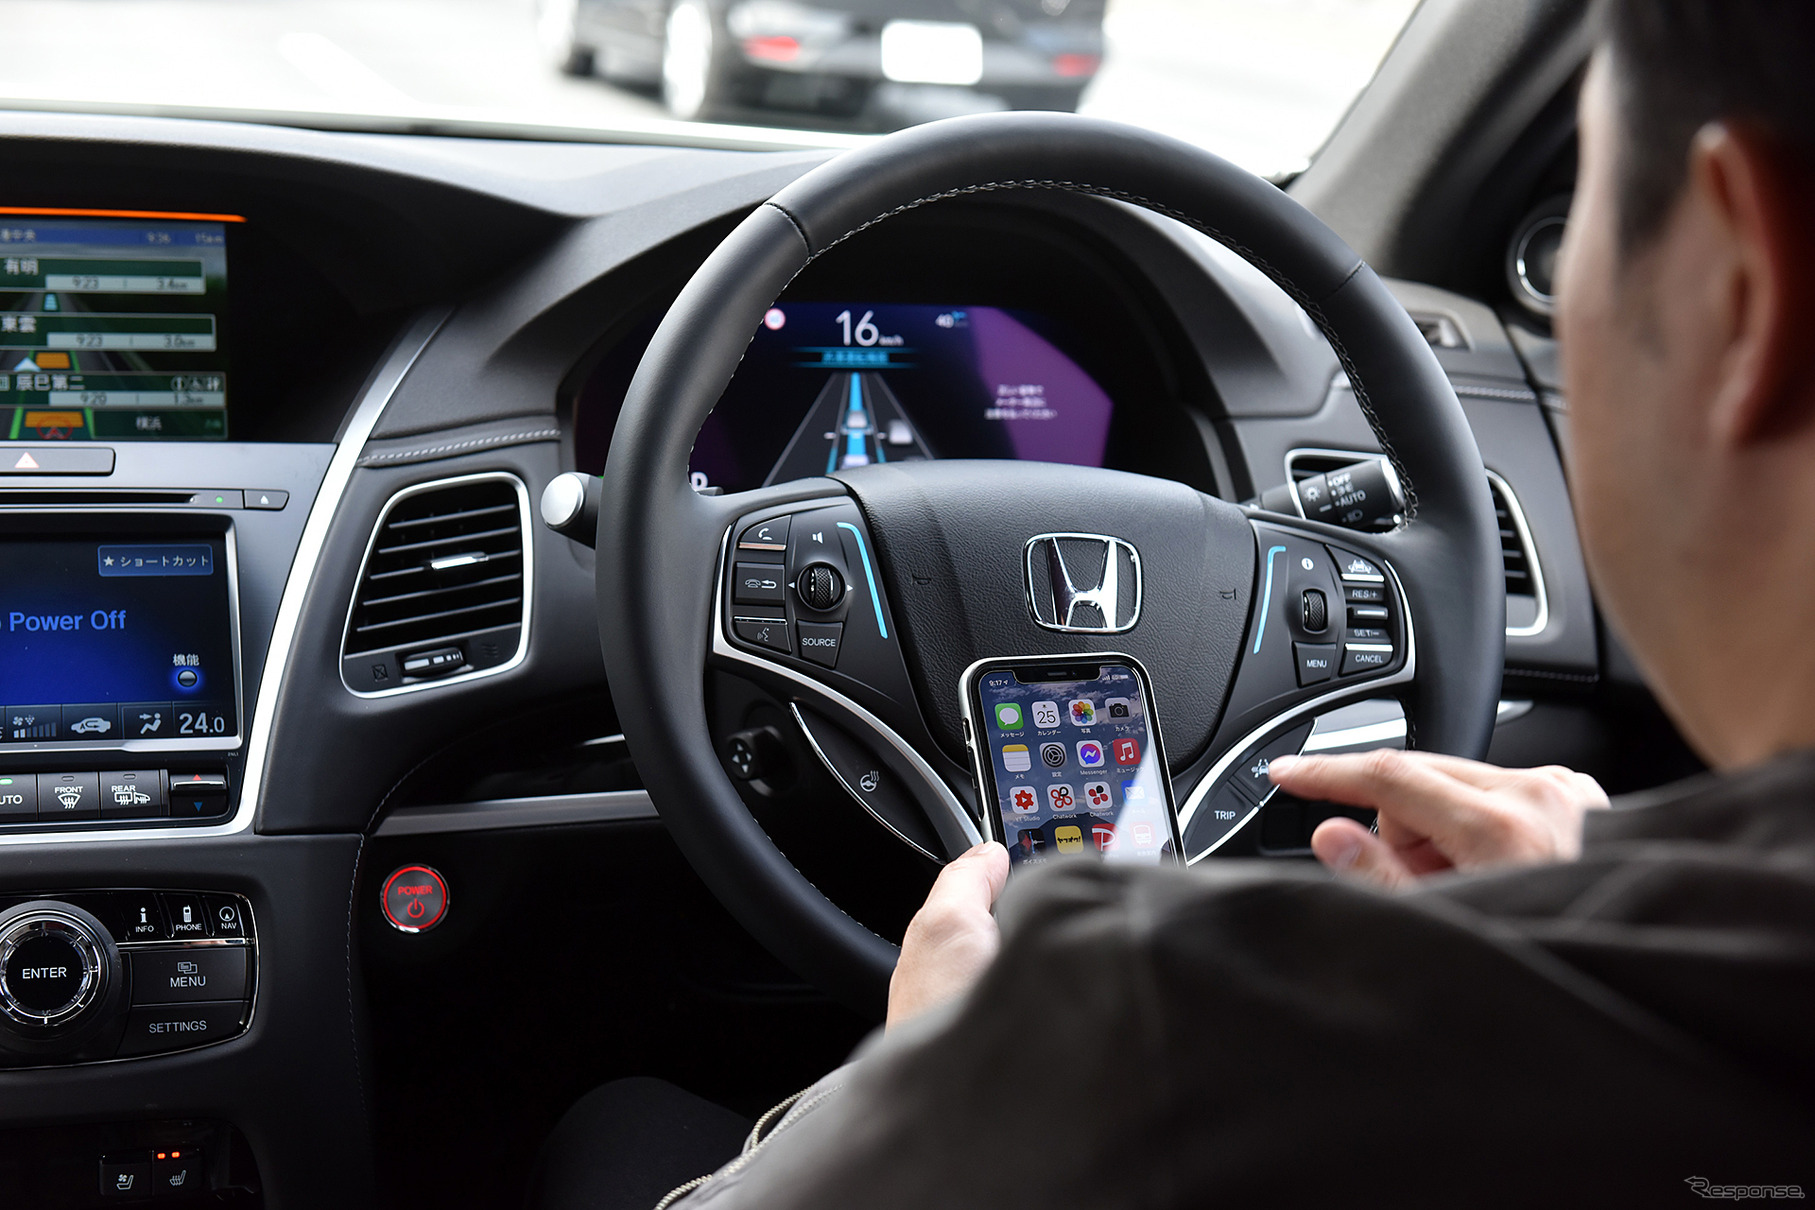 市販車として初めて「レベル3」自動運転を実現したホンダ レジェンド。写真は渋滞での自動運転中にスマートフォンを使用している。